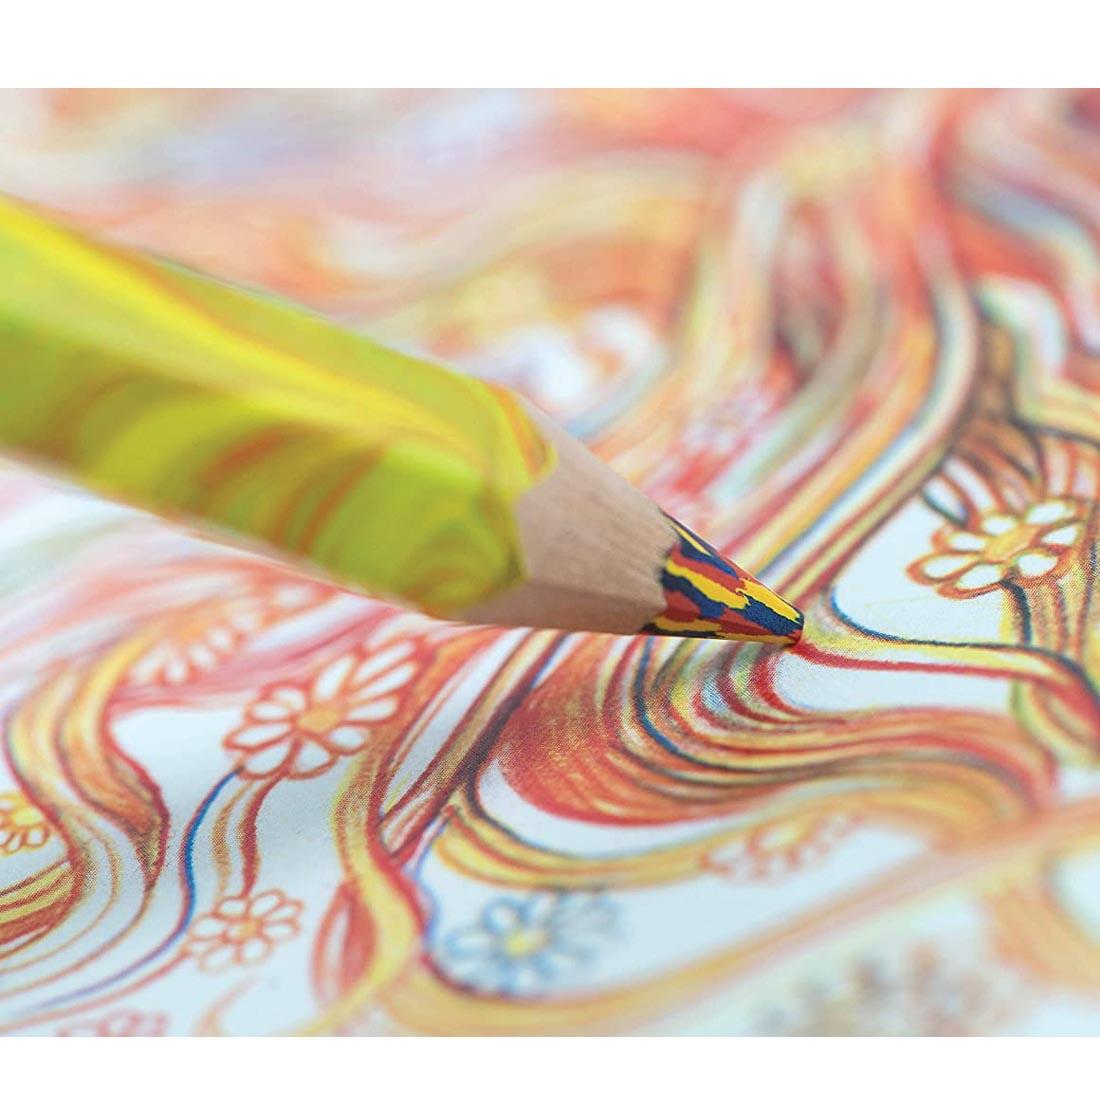 Closeup of pencil drawing using a Koh-I-Noor Magic FX Pencil